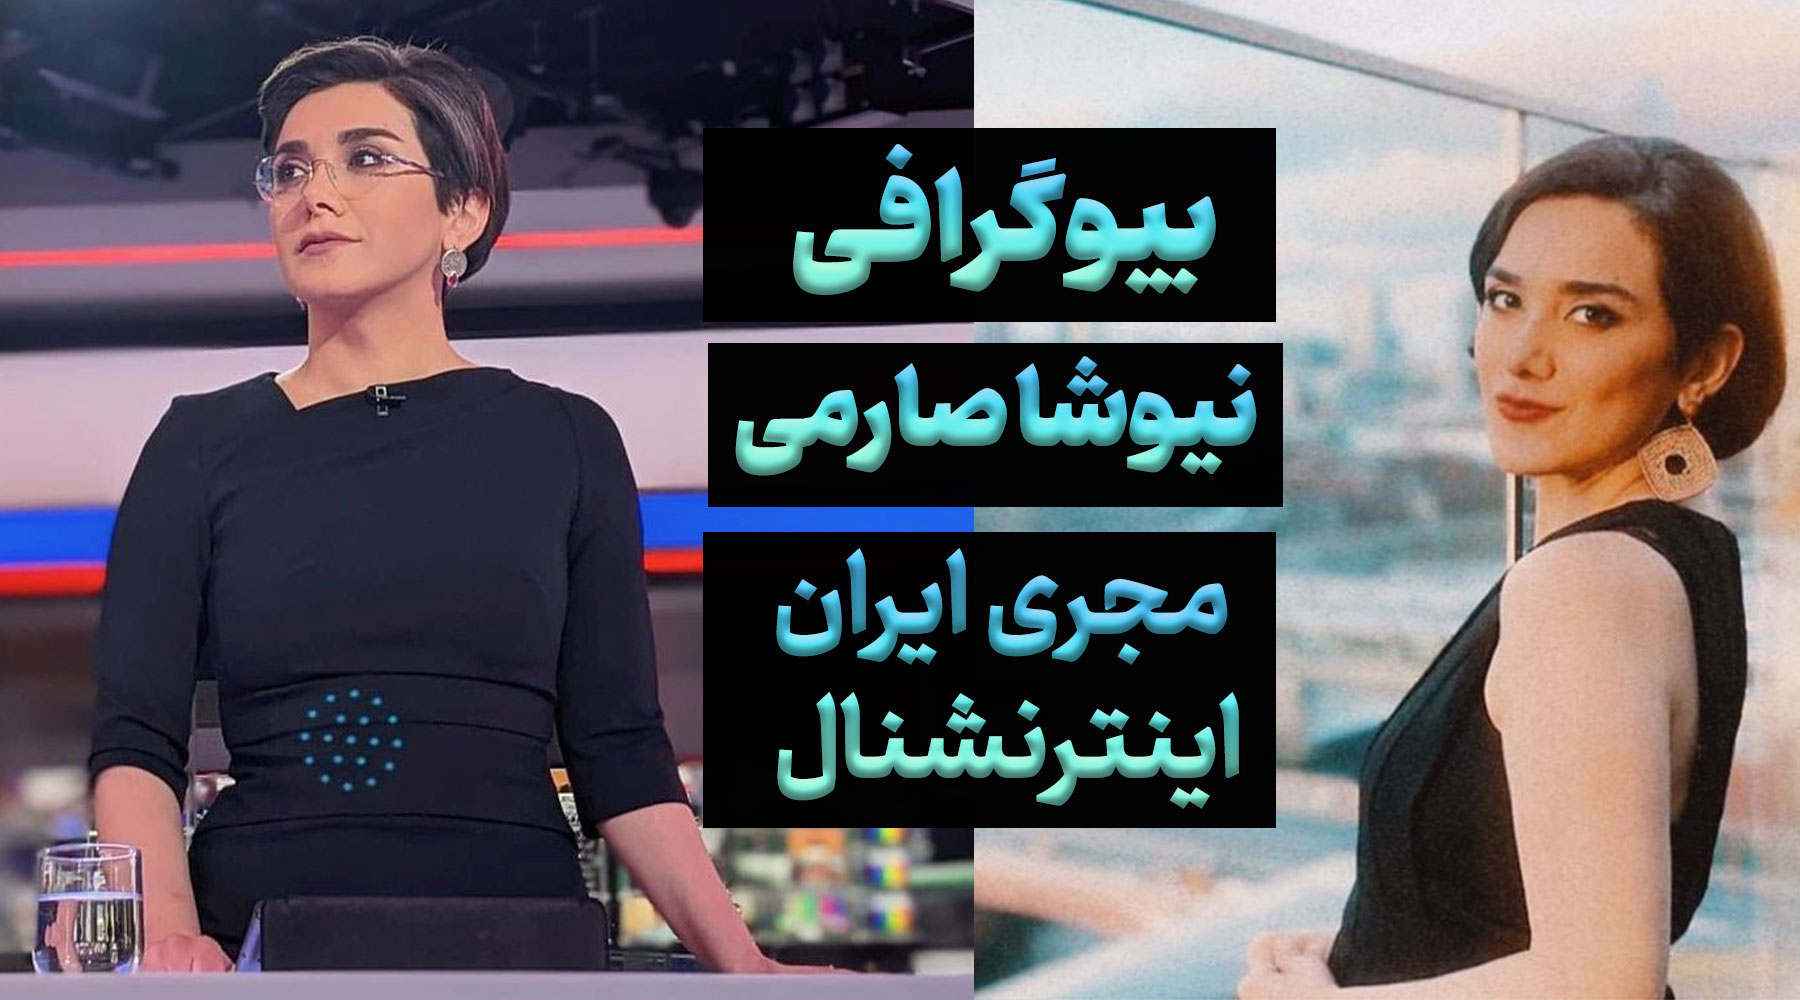 بیوگرافی نیوشا صارمی مجری ایران اینترنشنال، رابطه و حواشی